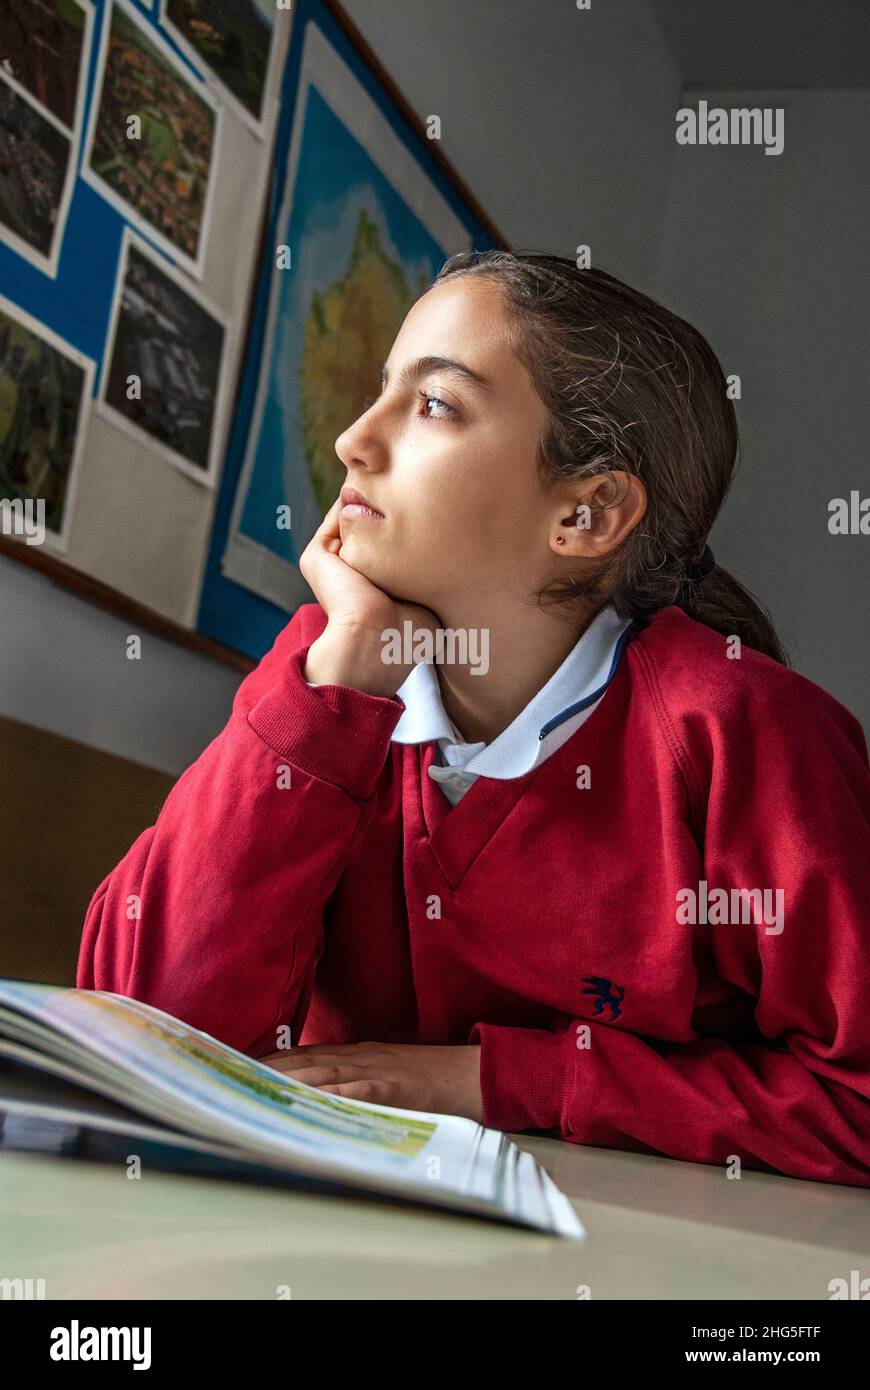 SCHÜLER MÄDCHEN TAGTRÄUMEN NACHDENKLICHE KLASSE ASIATISCH HISPANIC MÄDCHEN 12-14 Jahre Junior girl Student blickt aus der Schule Klassenzimmer Fenster, träumen. Stockfoto